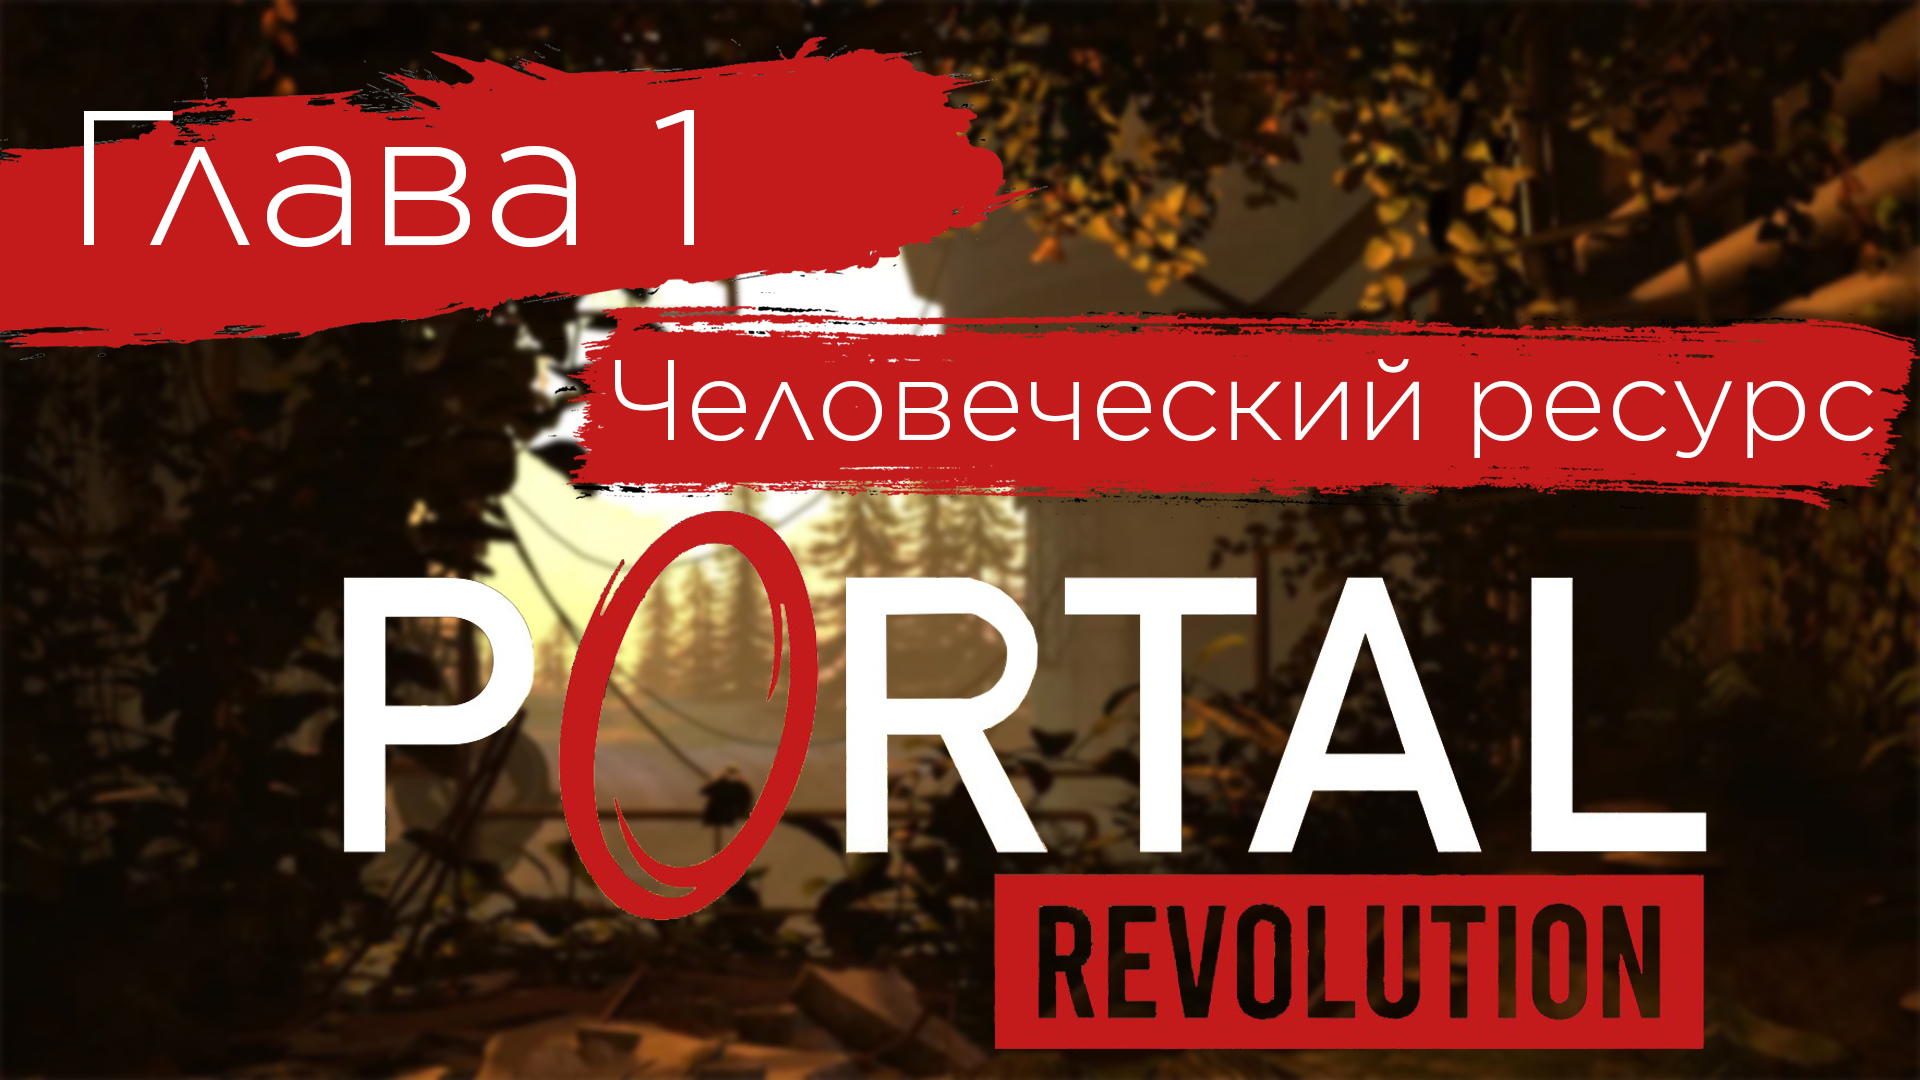 ЭТОТ МОД ЖДАЛИ 8 ЛЕТ! | Portal: Revolution #1